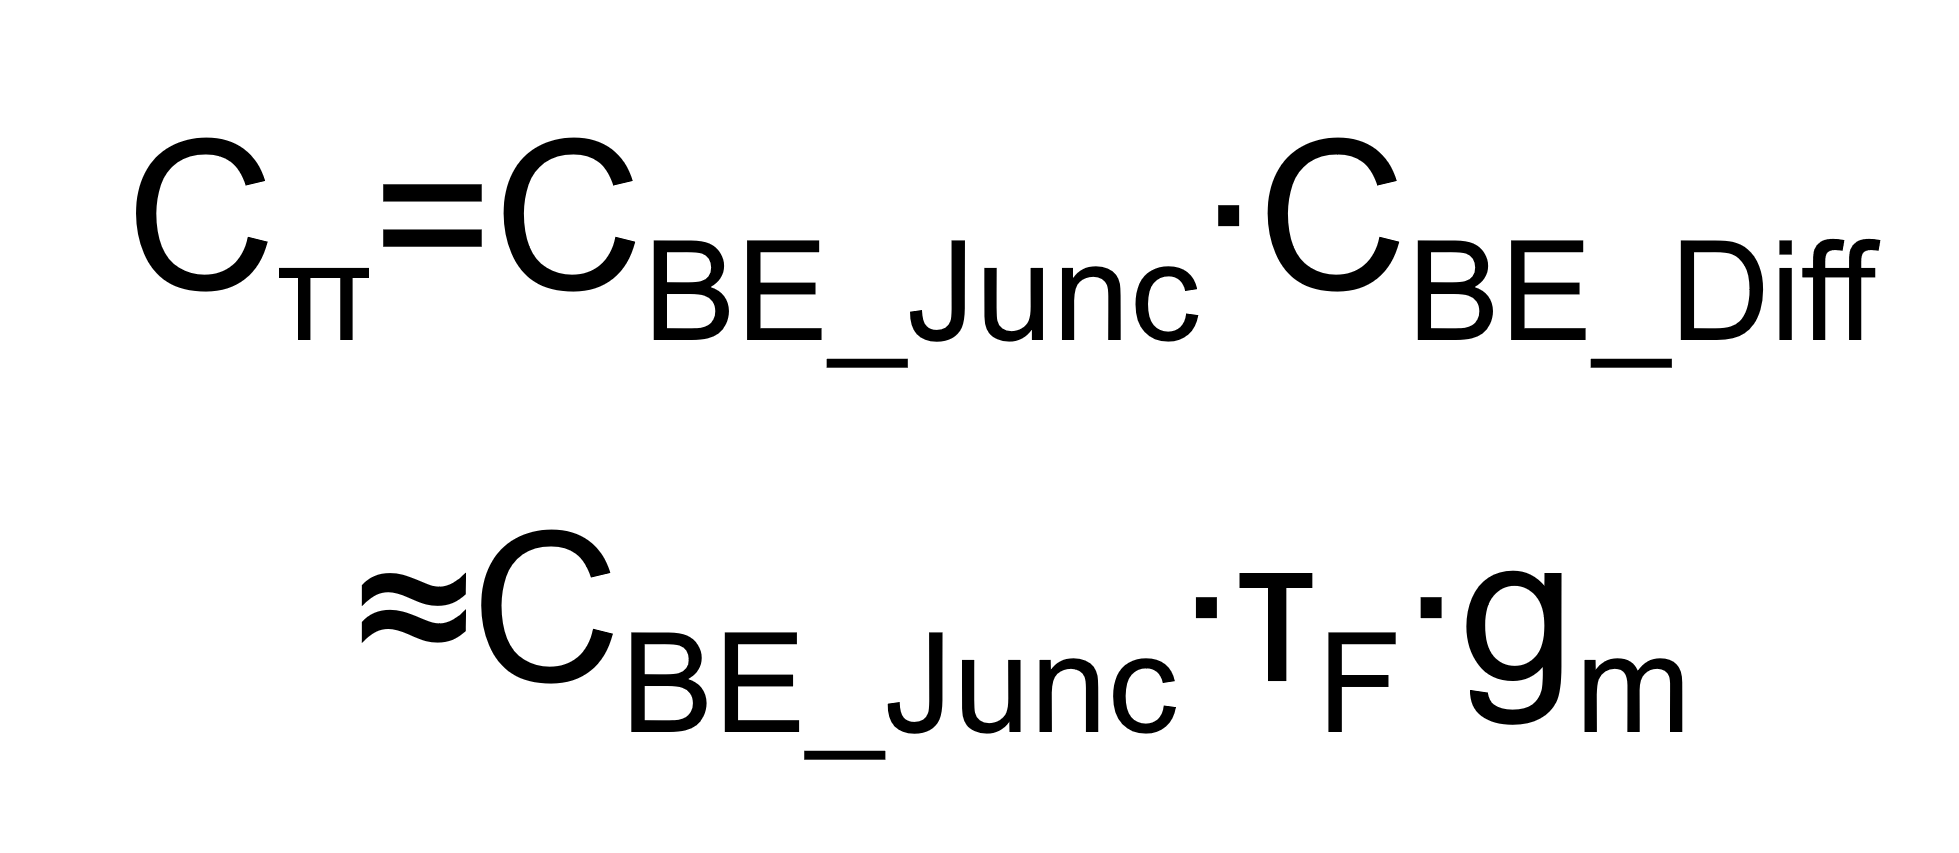 Das Bild zeigt die Formel zur Berechnung der Kapazität des Basis-Emitter-Übergang im Erweiterten Kleinsignal-Ersatzschaltbild des Bipolartranistor